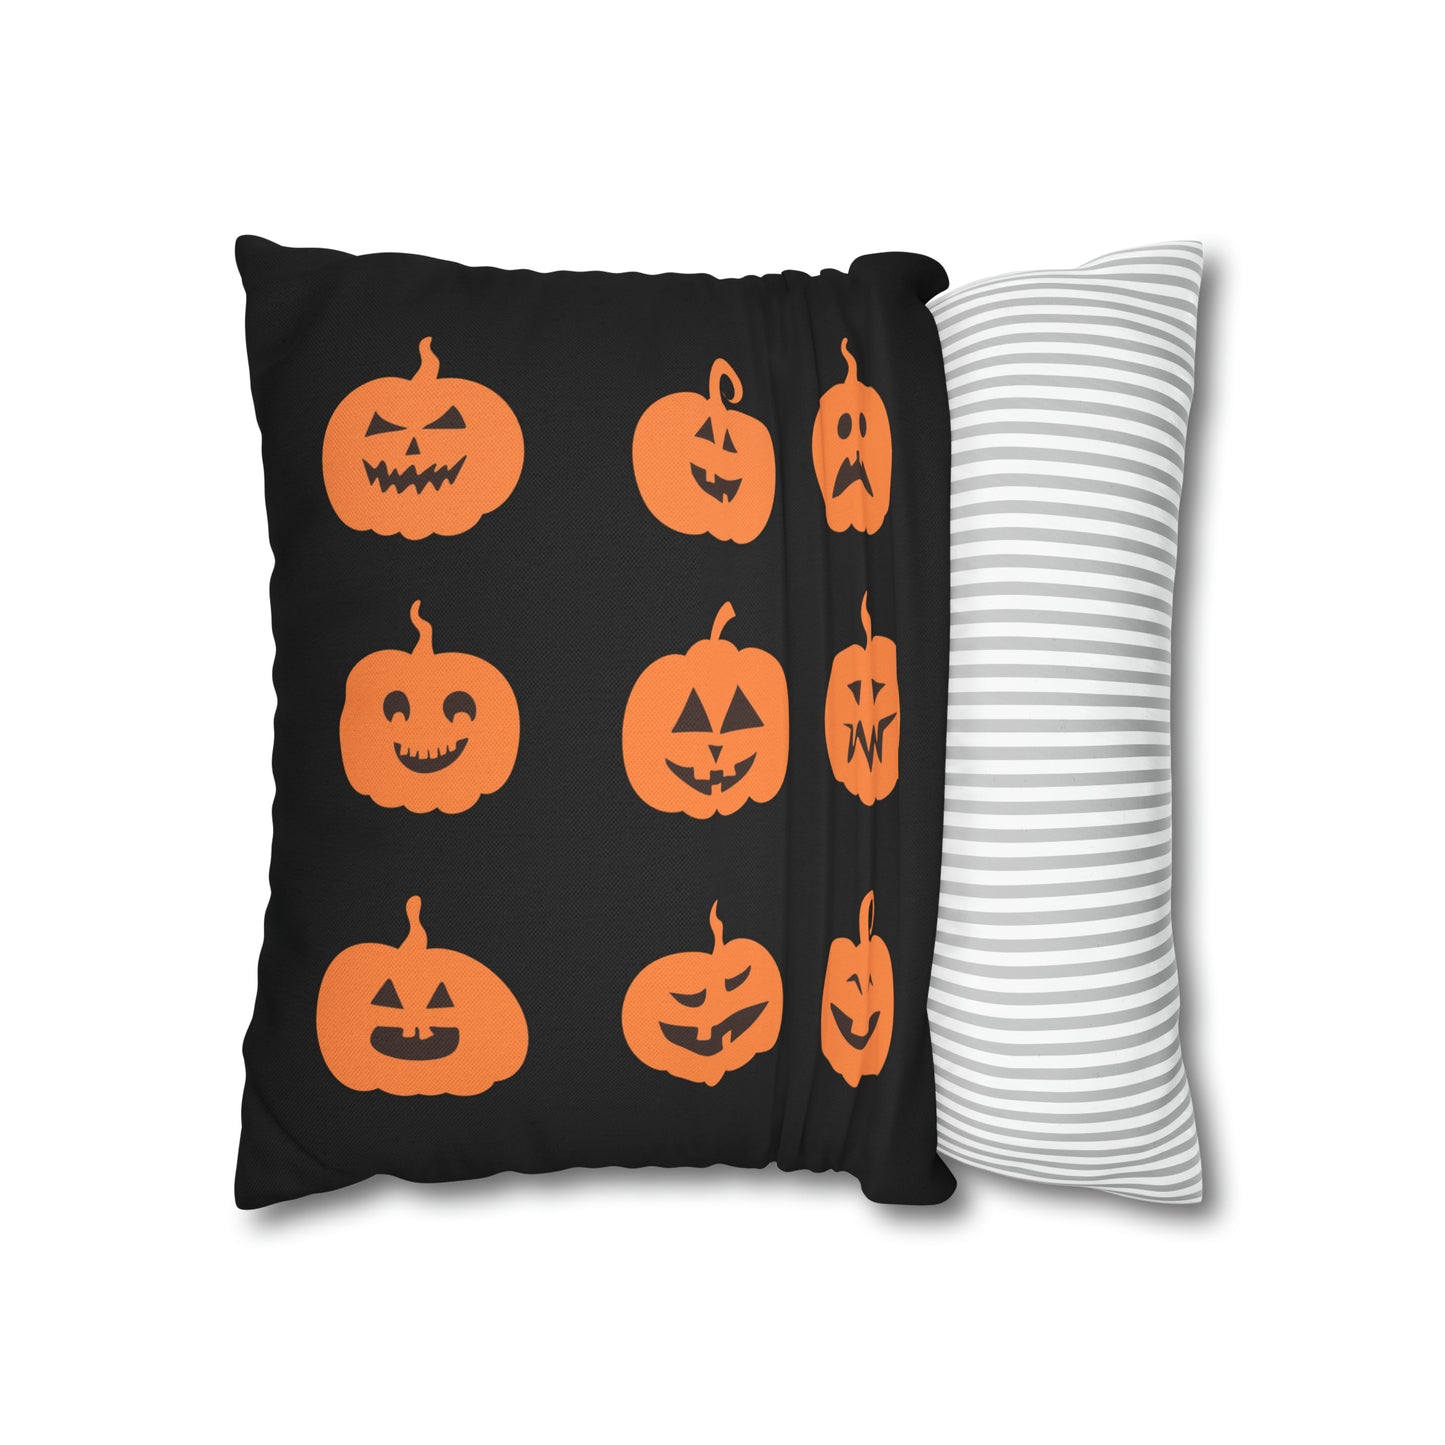 Pumpkin Grid - Halloween Pillow Cover